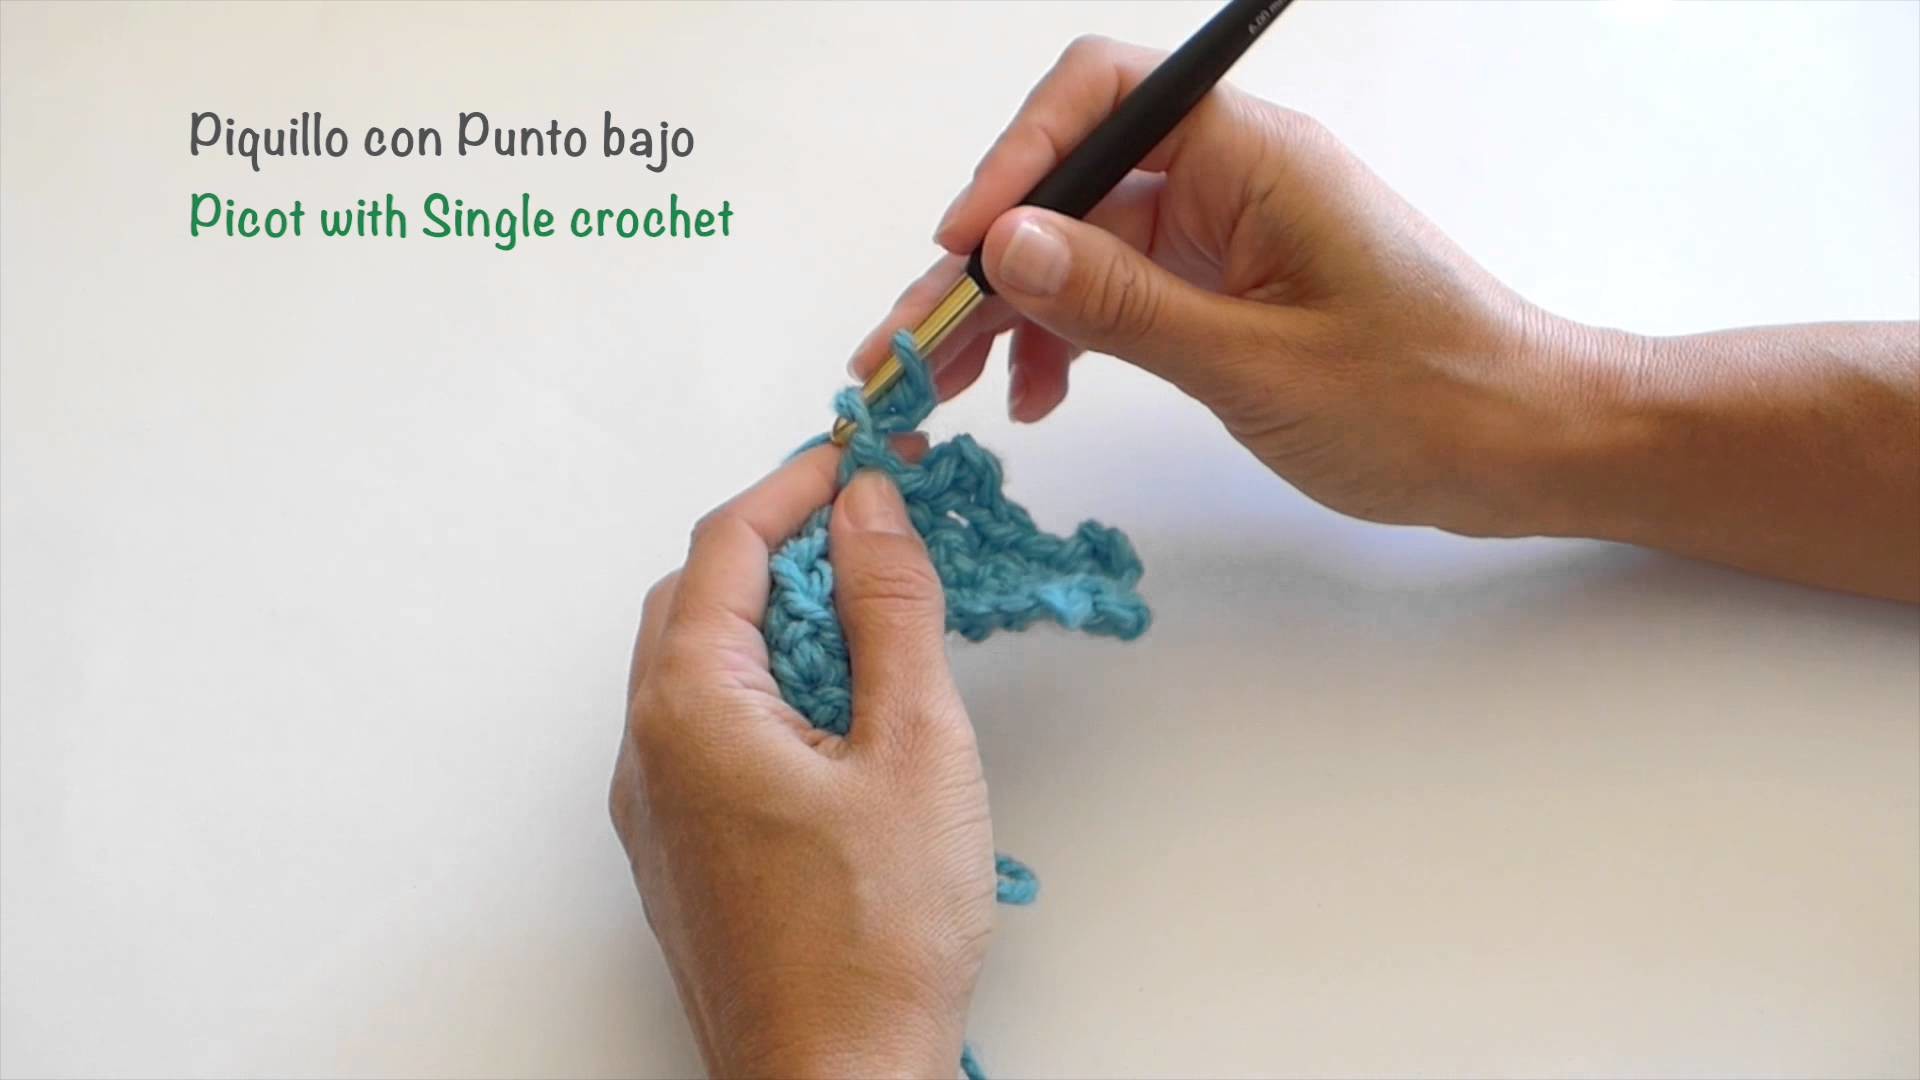 Piquillo con Punto bajo. Picot with Single crochet